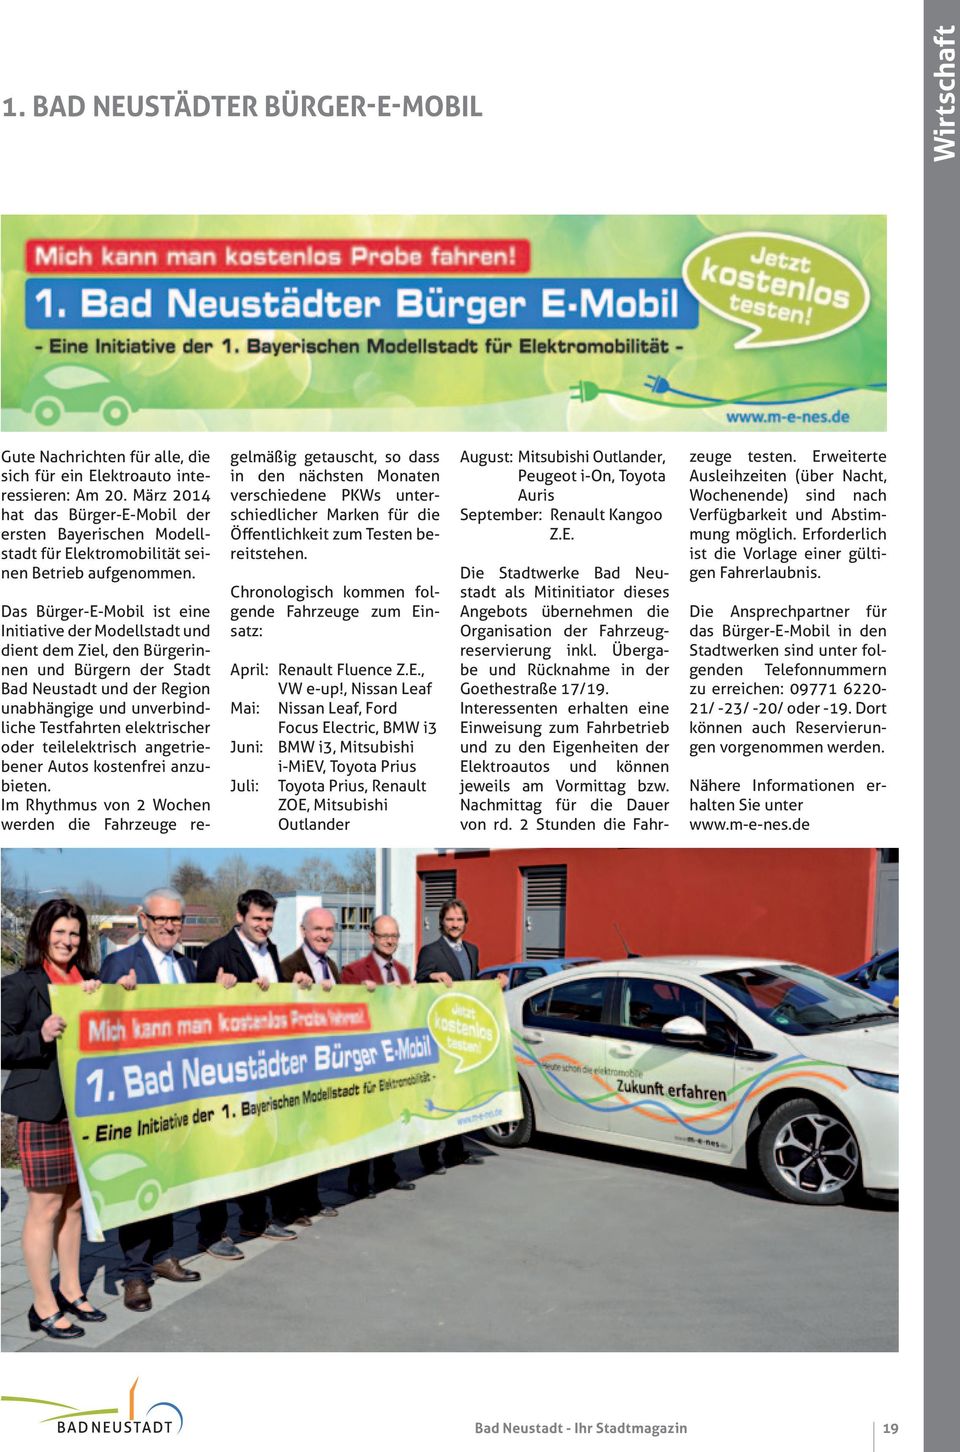 Das Bürger-E-Mobil ist eine Initiative der Modellstadt und dient dem Ziel, den Bürgerinnen und Bürgern der Stadt Bad Neustadt und der Region unabhängige und unverbindliche Testfahrten elektrischer